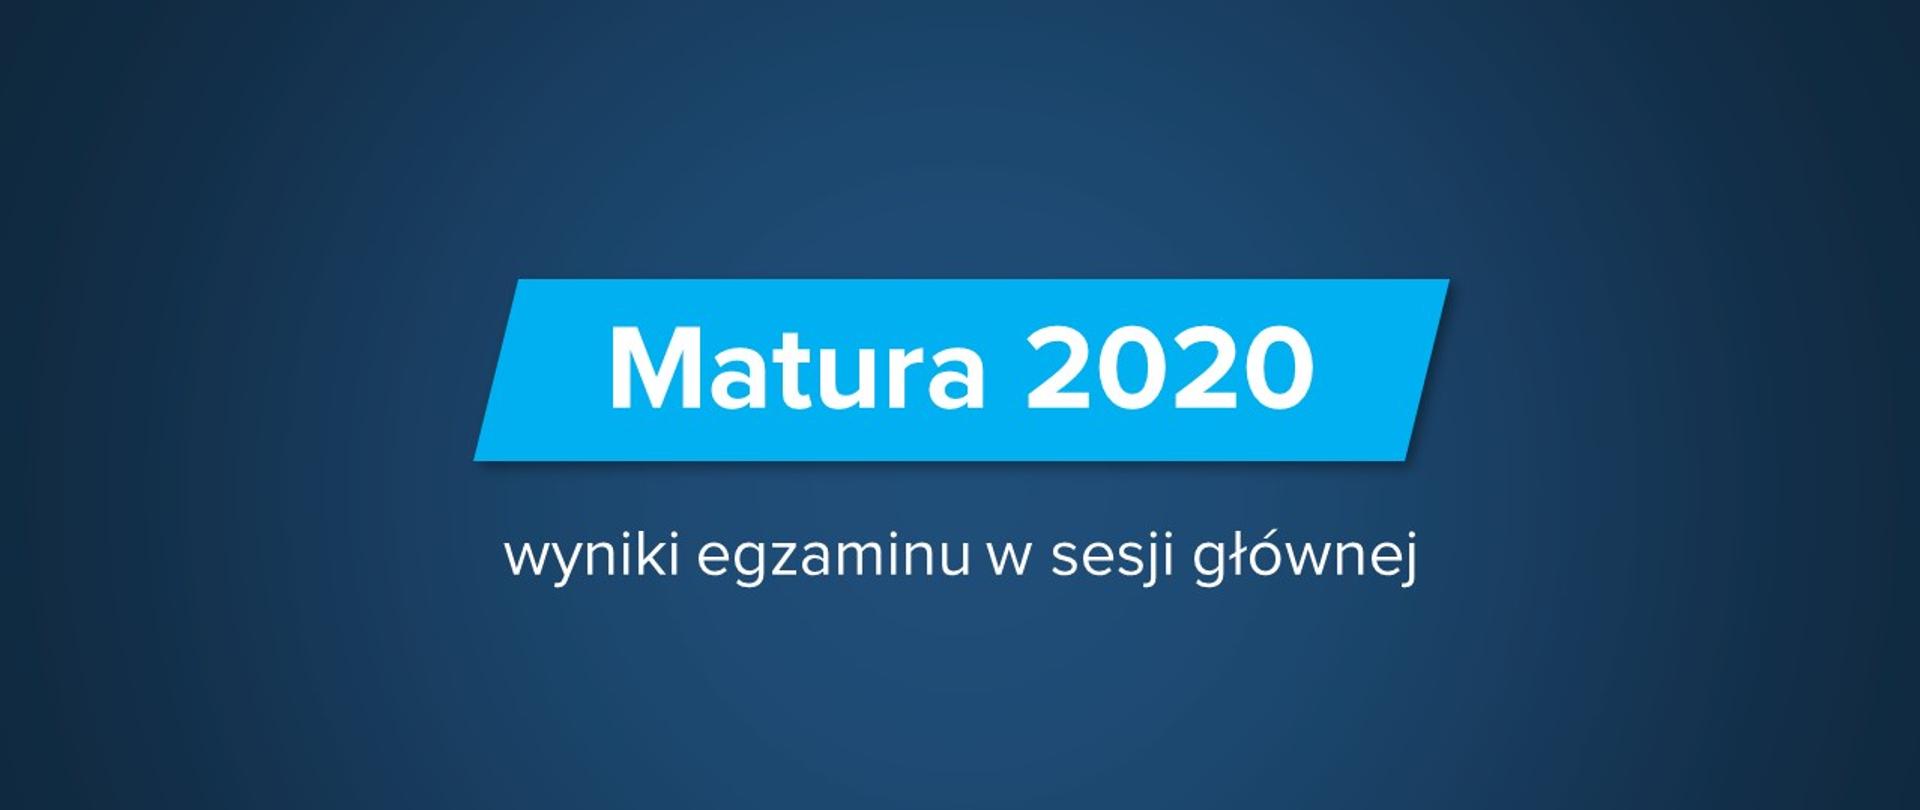 Matura 2020 Wyniki Egzaminu W Sesji Glownej Ministerstwo Edukacji I Nauki Portal Gov Pl